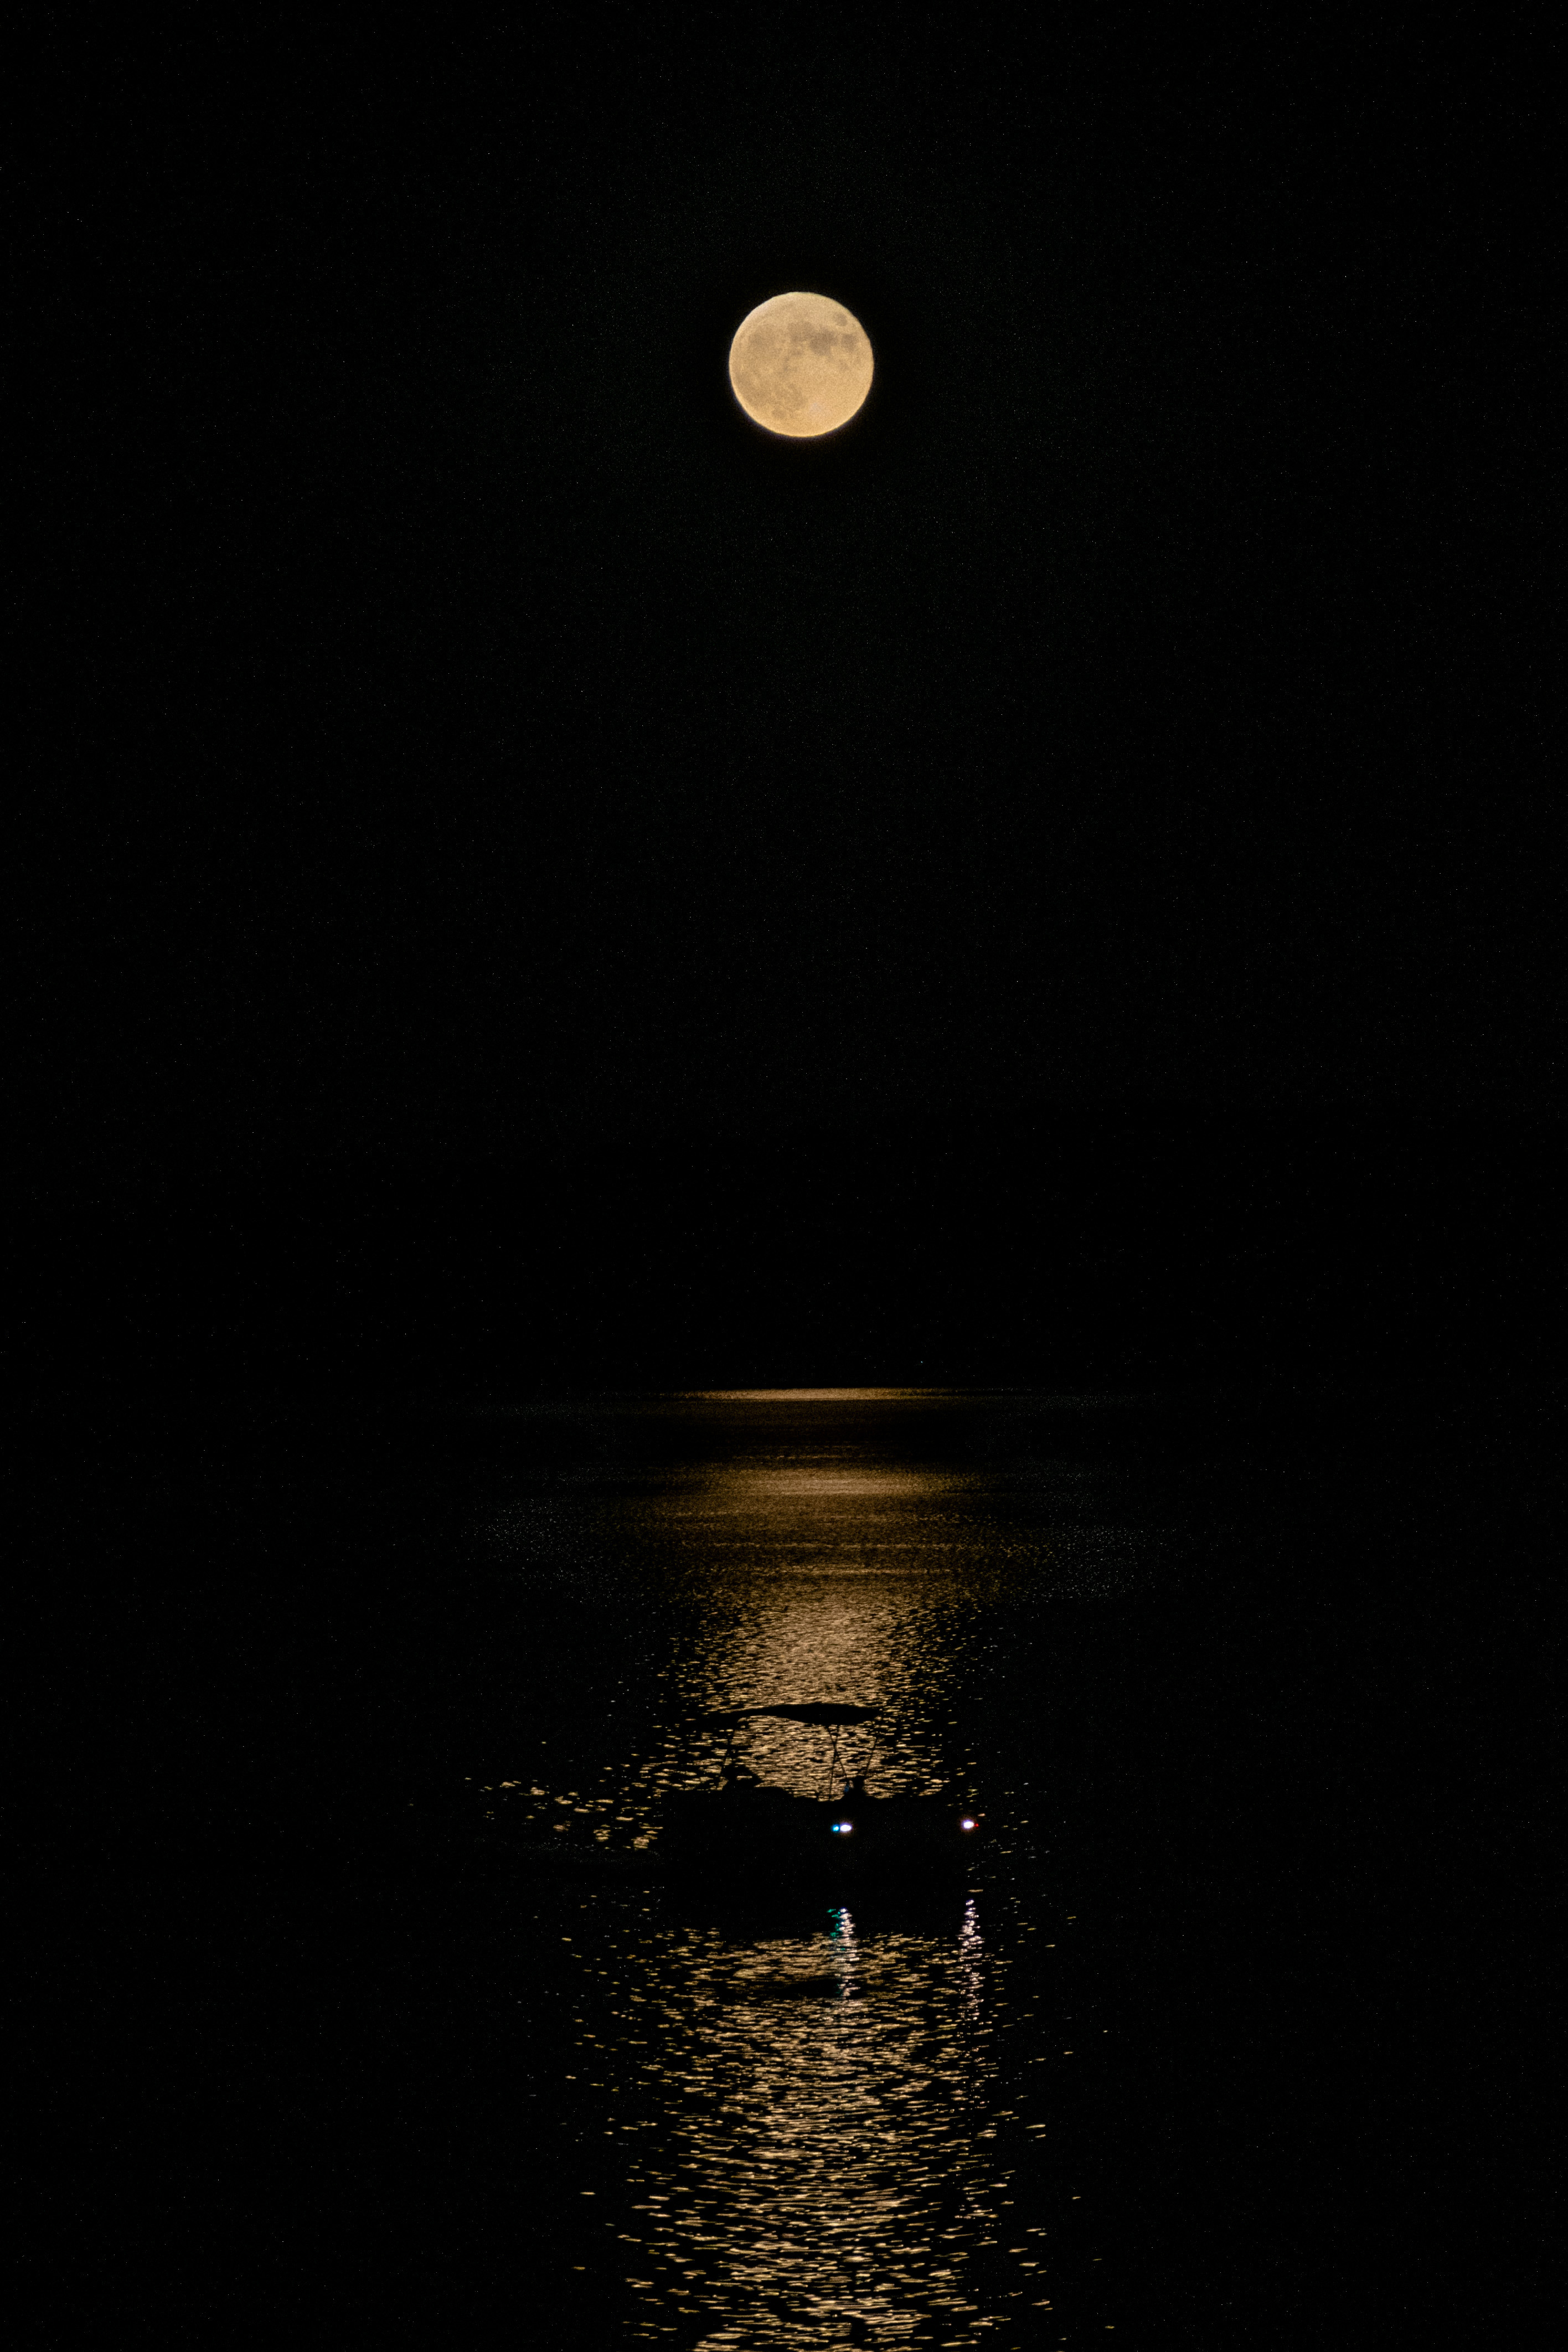 Księżyc w pełni wisi na czarnym niebie, a łódź przepływa obok jego wydłużonego odbicia w wodzie.